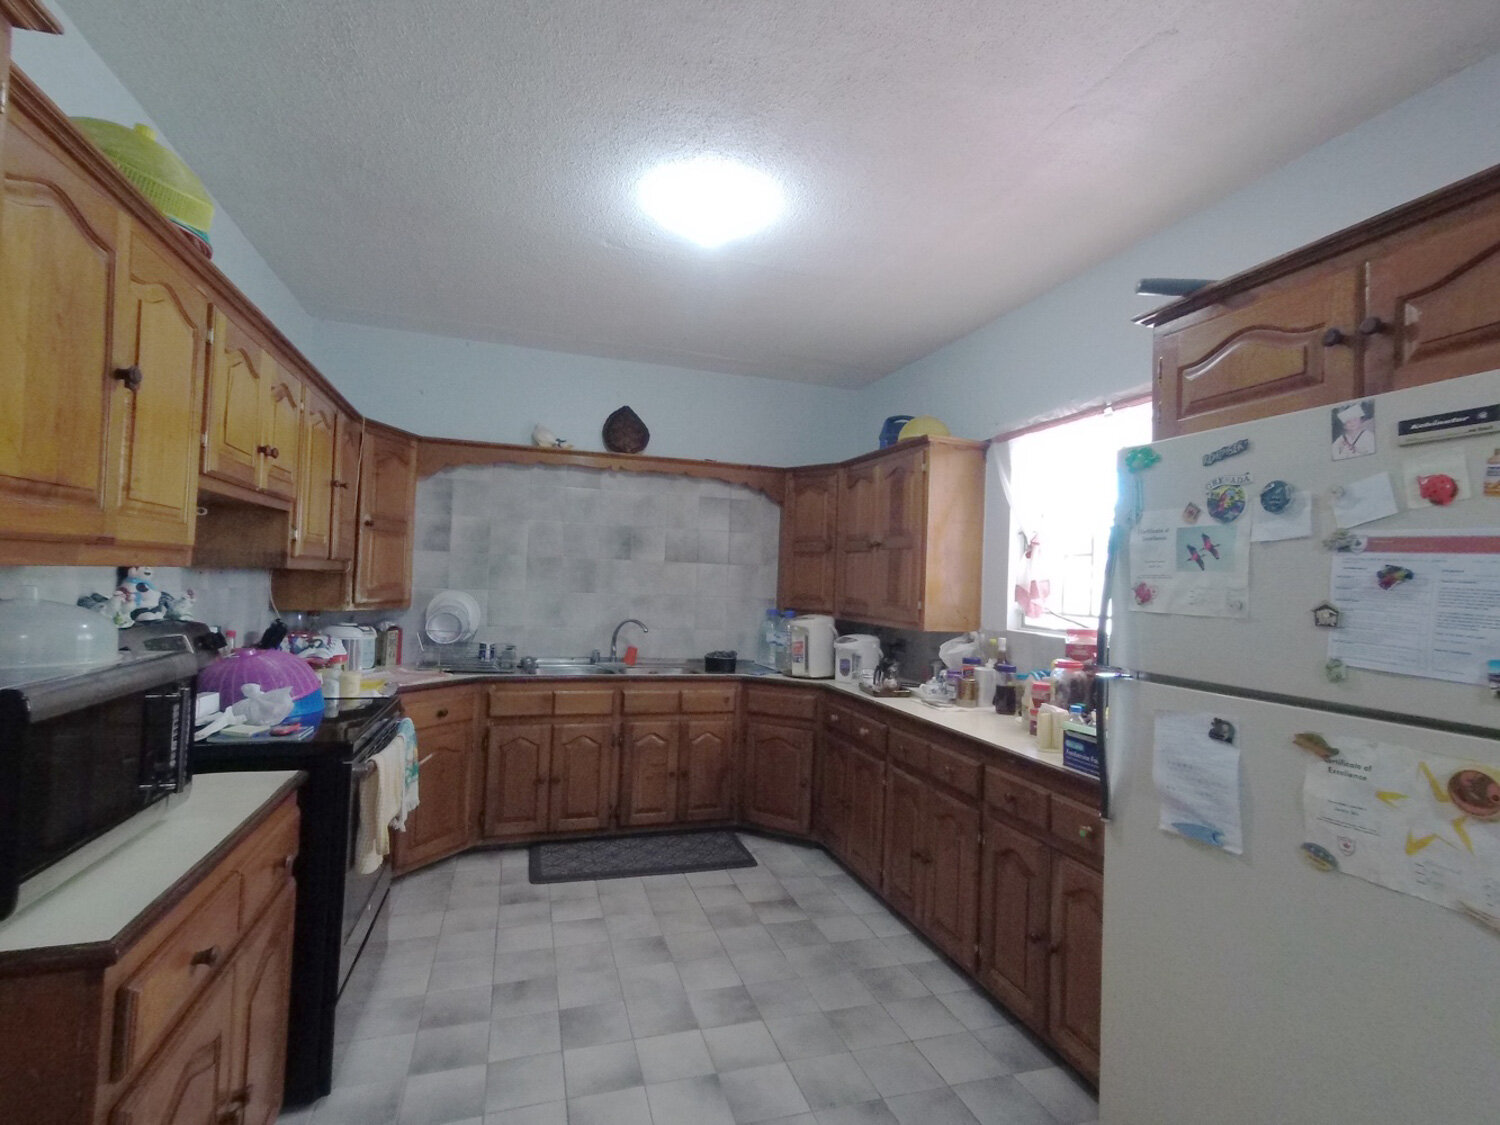 3-kitchen.jpg